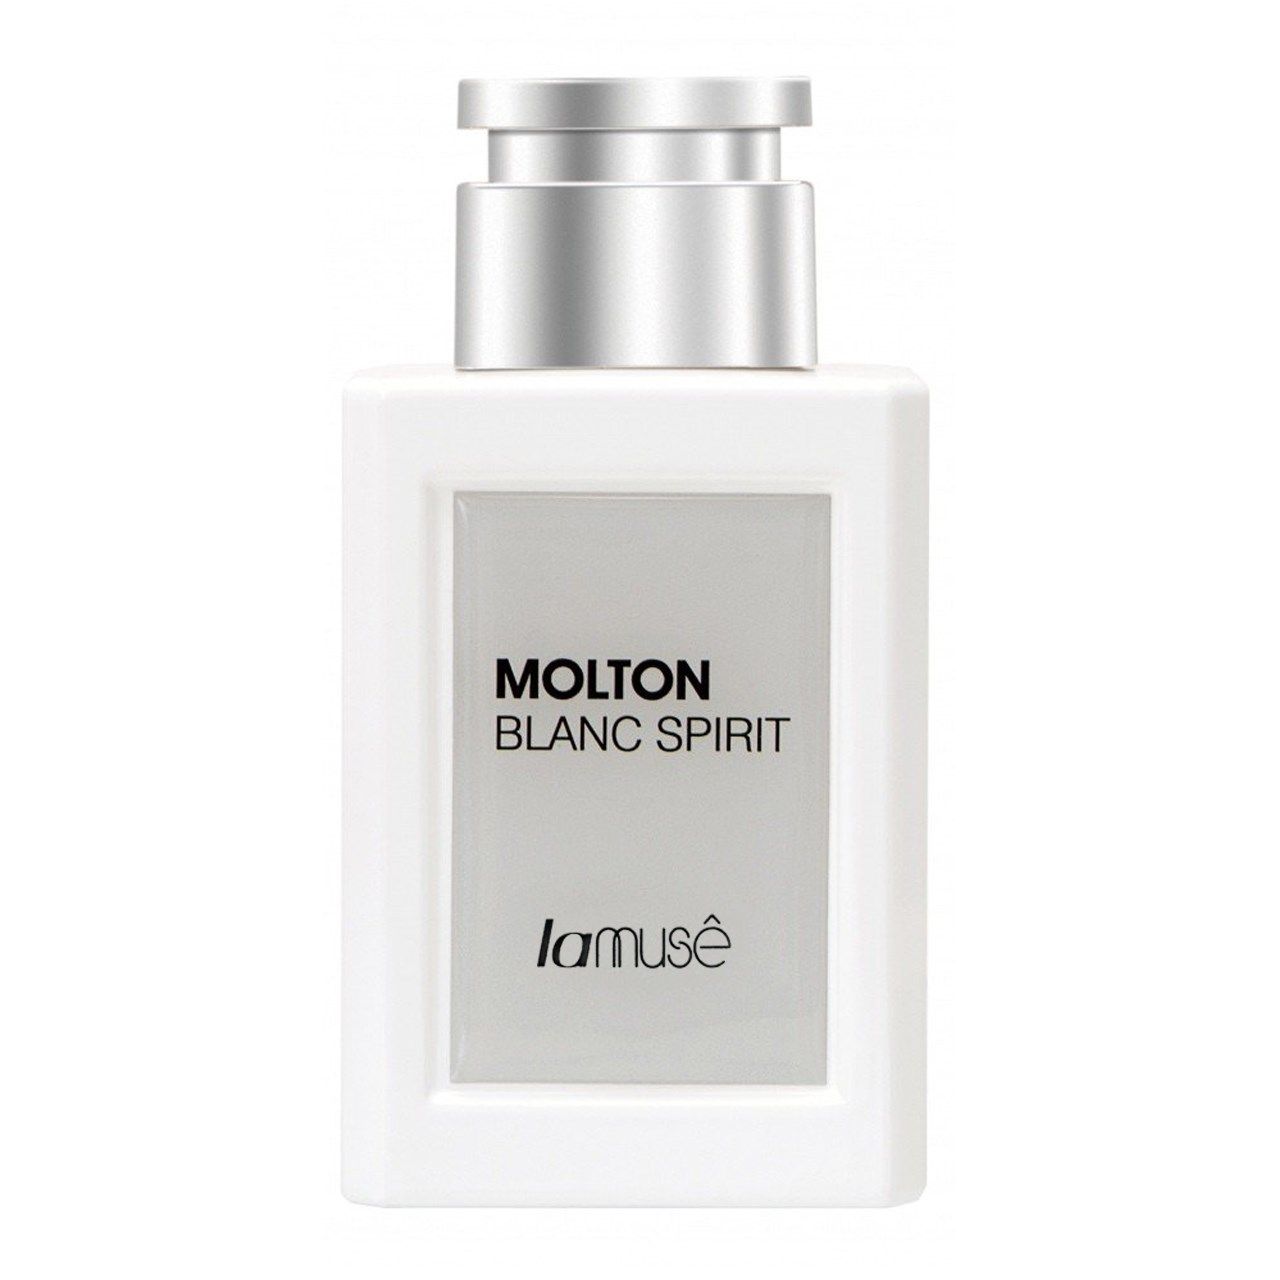 ادو پرفیوم مردانه لاموس مدل Molton Blanc Spirit حجم 80ml